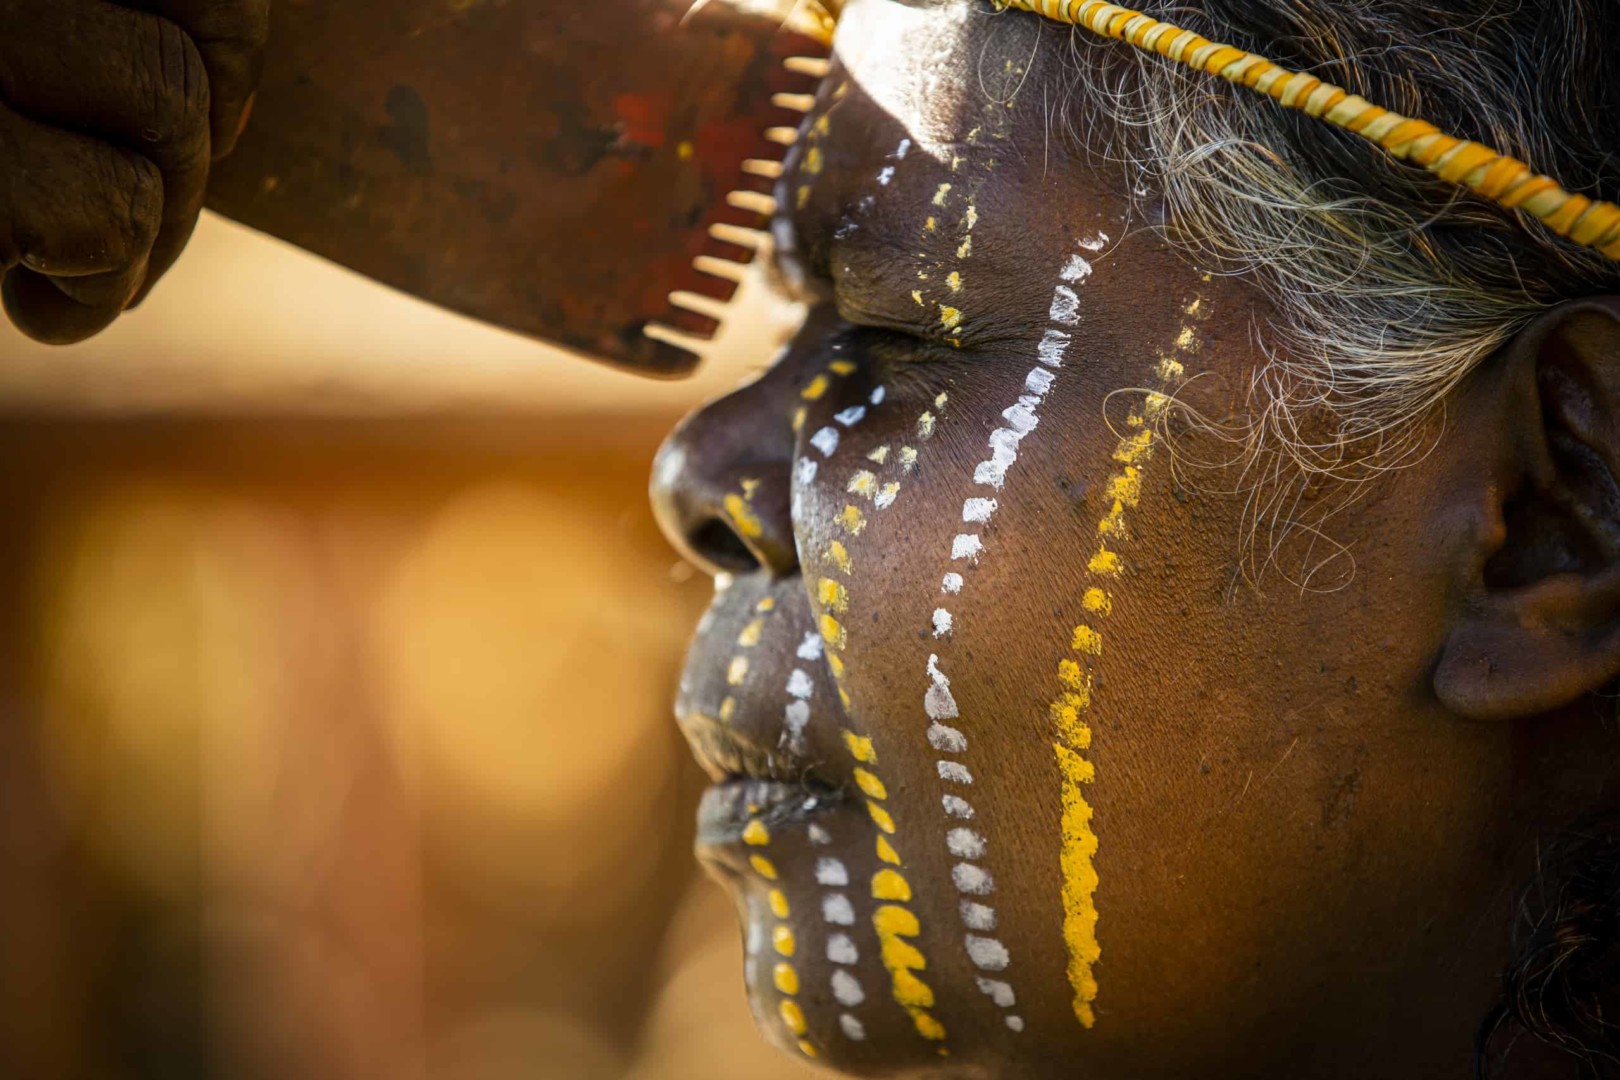 Australia Aboriginal culture